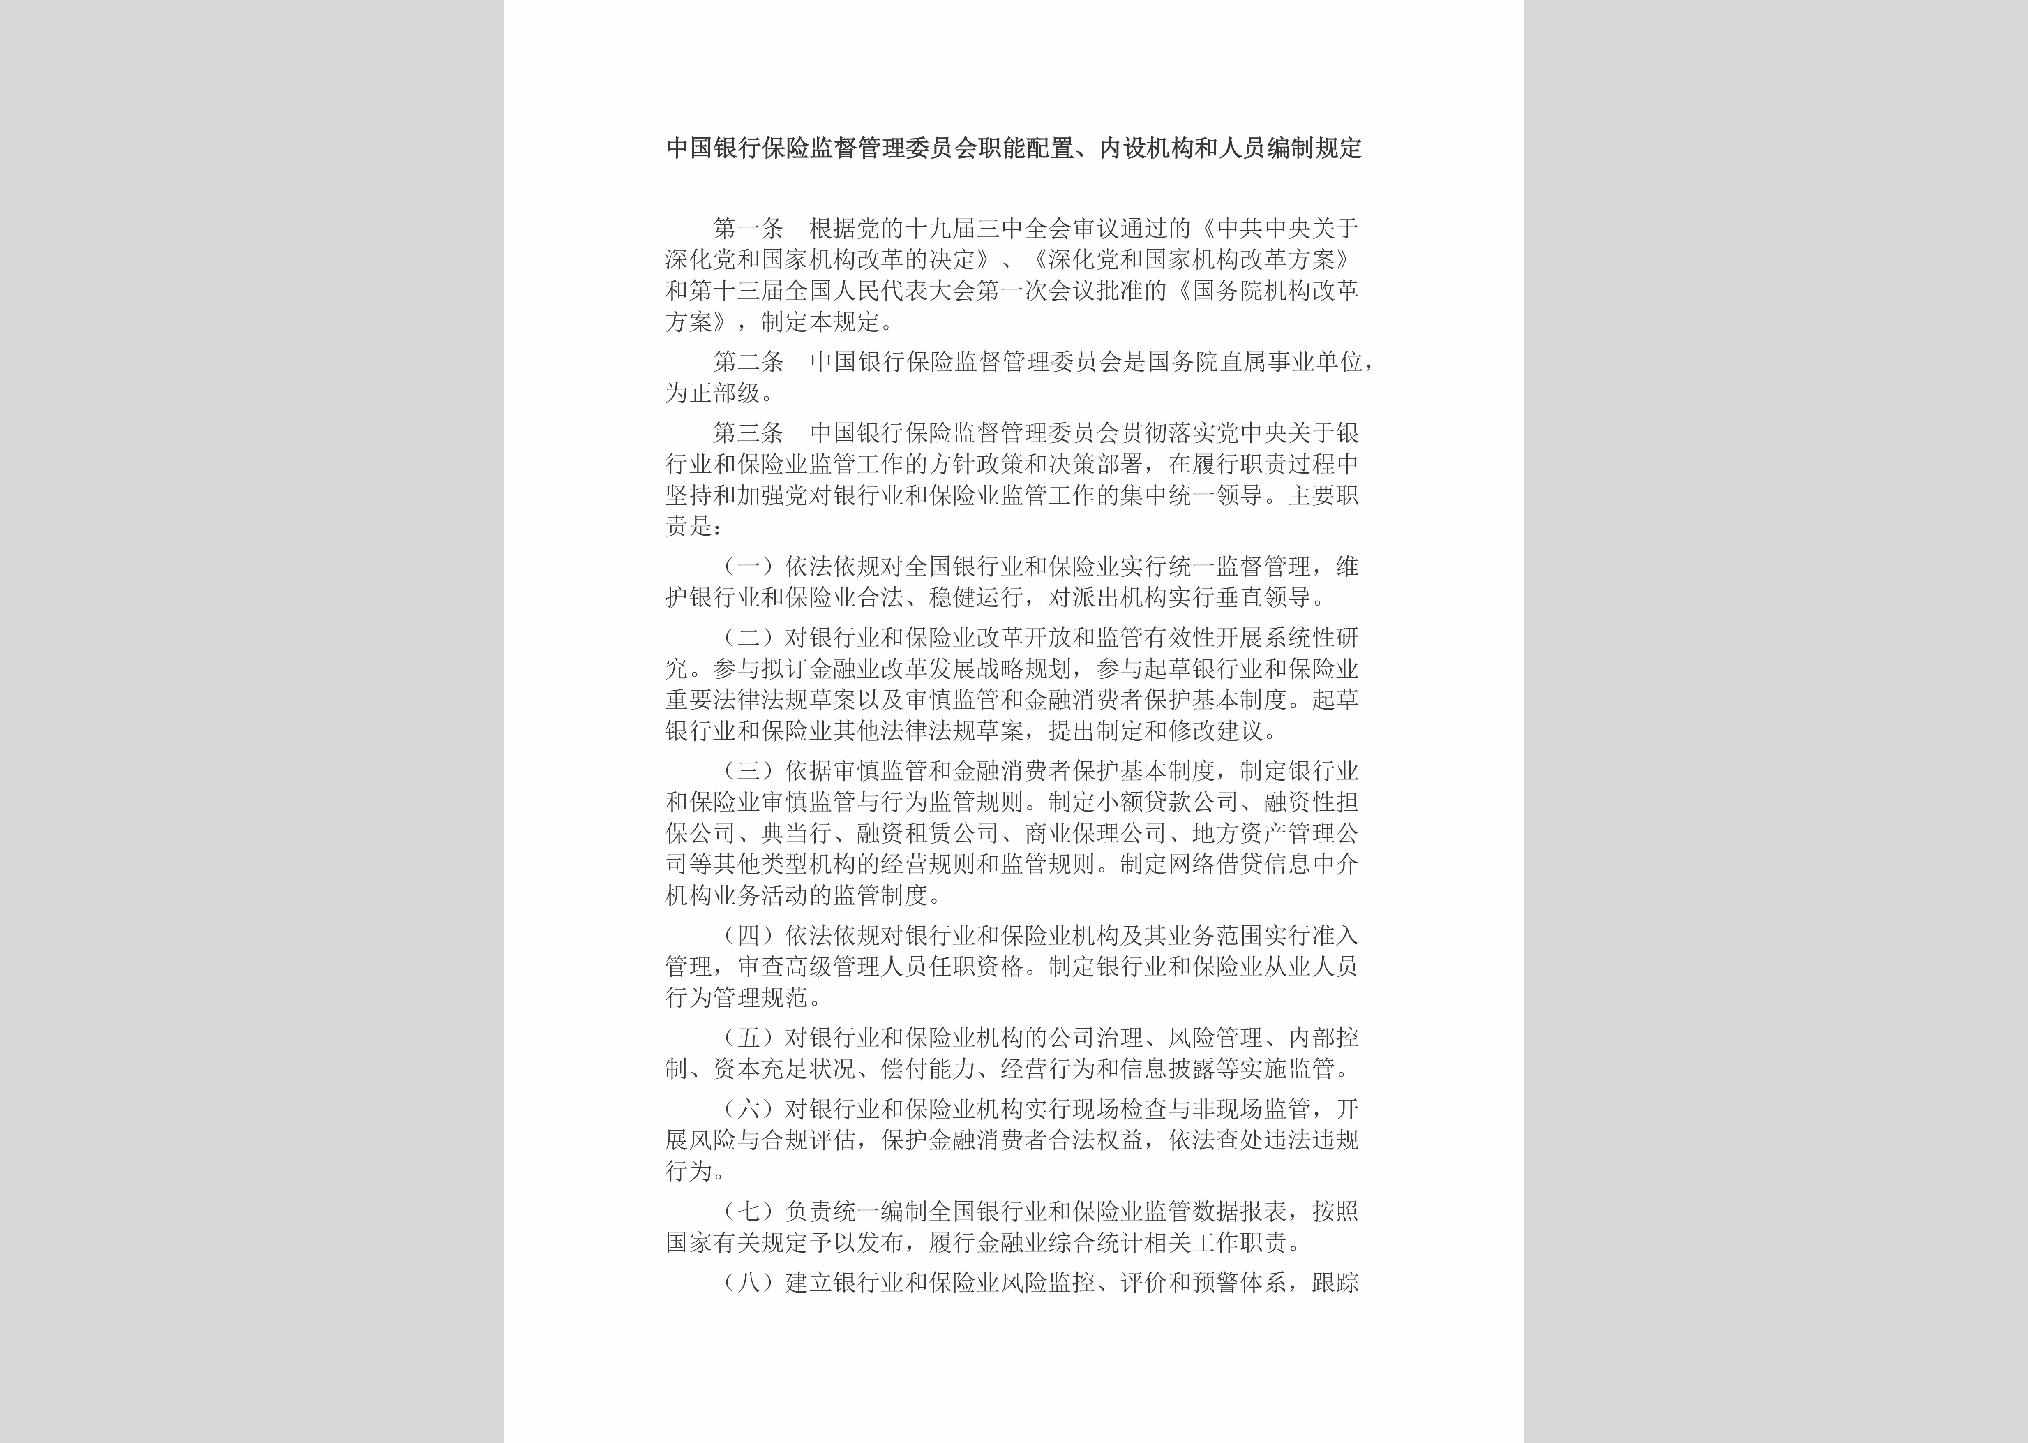 JL-ZNPZNSJG-2018：中国银行保险监督管理委员会职能配置、内设机构和人员编制规定